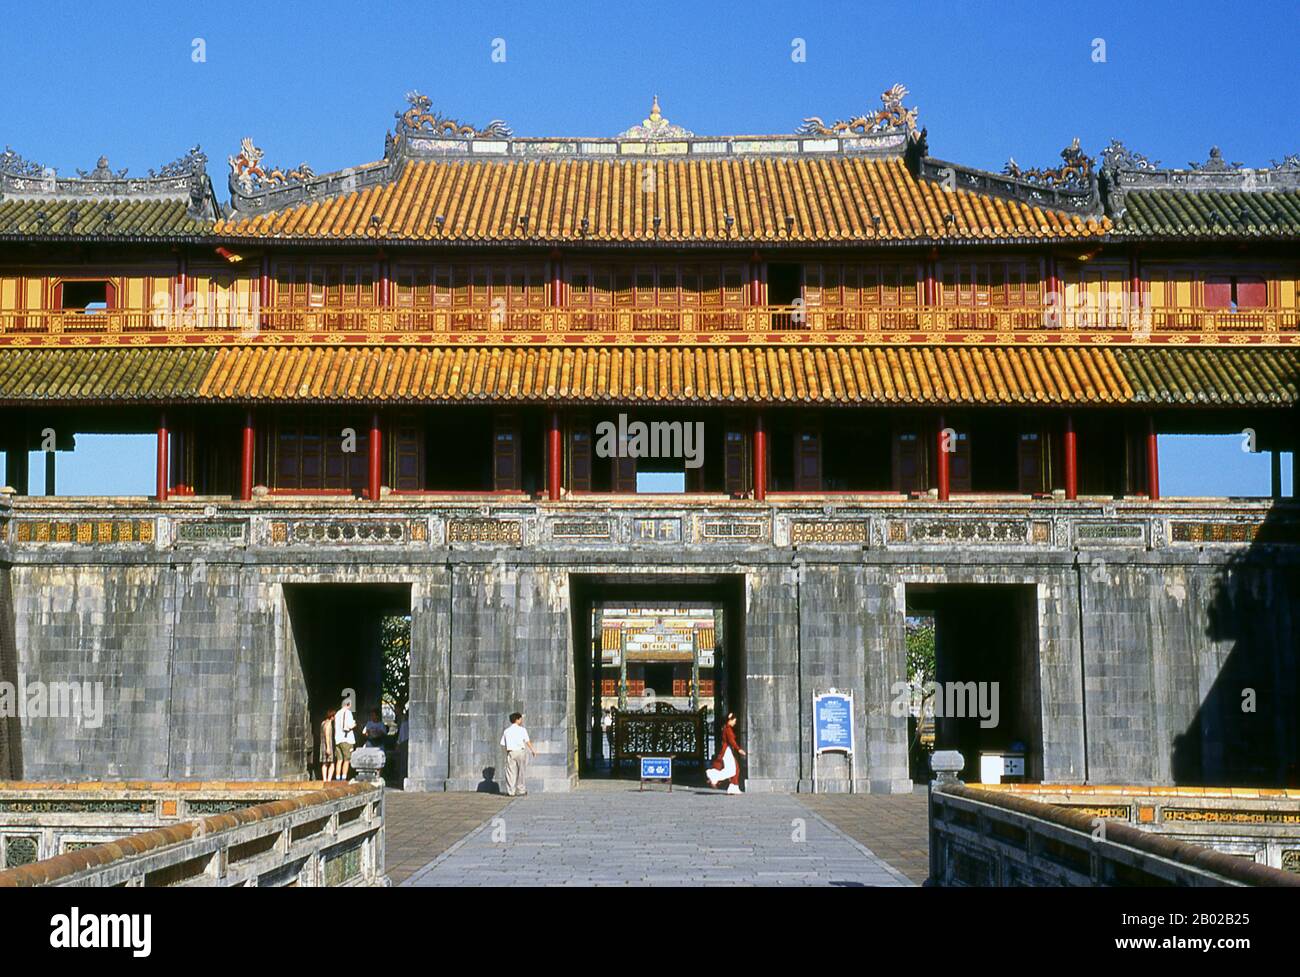 Le Ngọ Môn (caractère chinois : 午門), également connu sous le nom de porte de Noon, est la porte principale de la ville impériale, Huế, située dans la citadelle de Huế. Il a été construit en 1833 dans le style traditionnel vietnamien Nguyen sous la domination de l'empereur Minh Mang. L'empereur Gia long ordonna la construction de la Citadelle de Hue en 1805. Le vaste complexe est construit selon les notions de fengshui ou de géomancy chinoise, mais suivant les principes militaires de l'architecte militaire français du XVIIIe siècle, Sébastien de Vauban. Le résultat est un hybride inhabituel et élégant, une ville impériale de style chinois soigneusement alig Banque D'Images